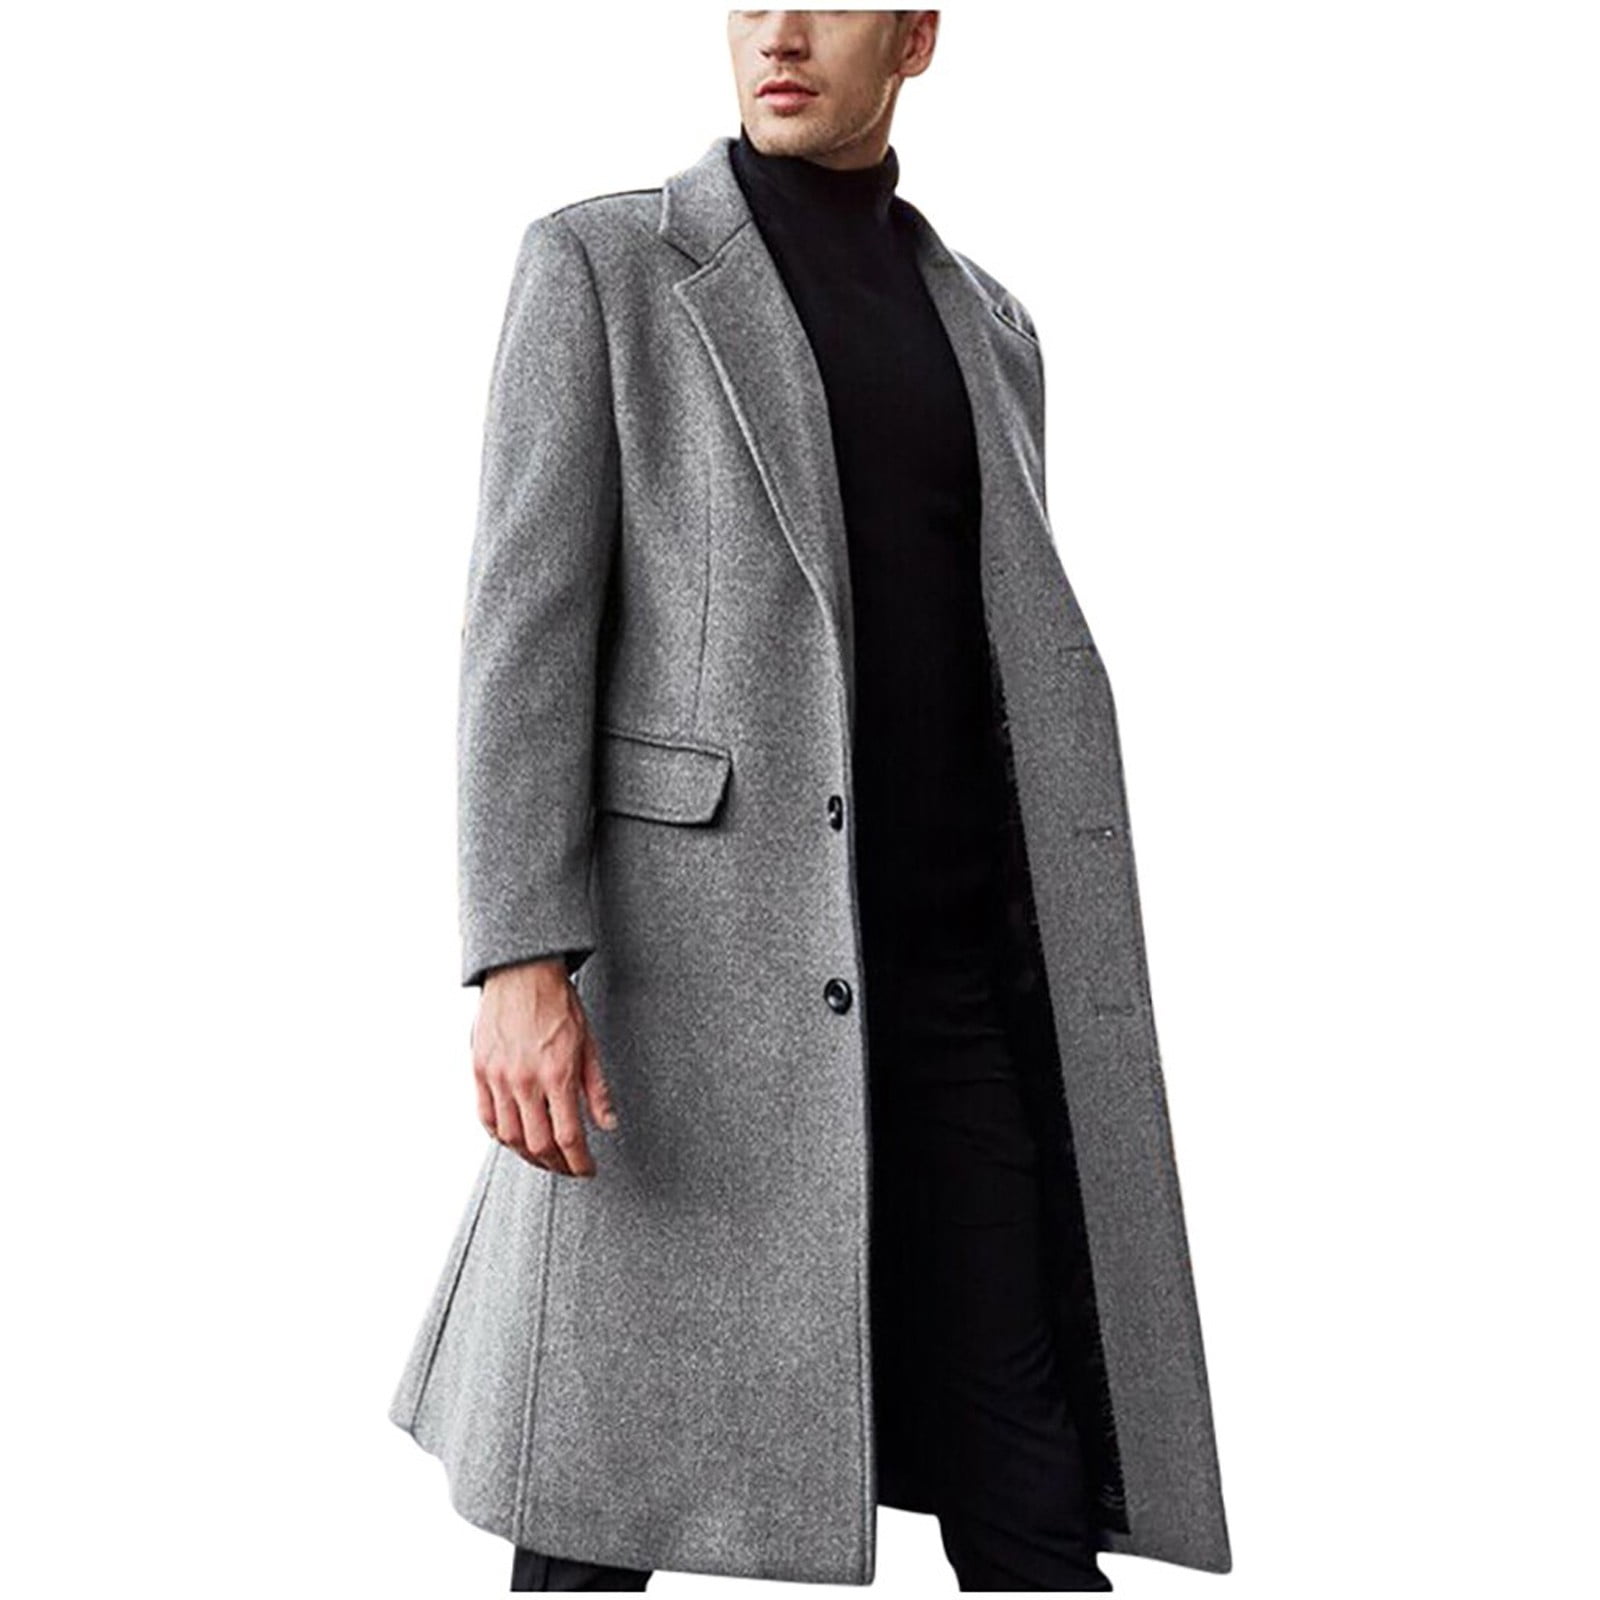 Winter Coat Men's British Style Solid Color Long Coat Warm Woolen ...